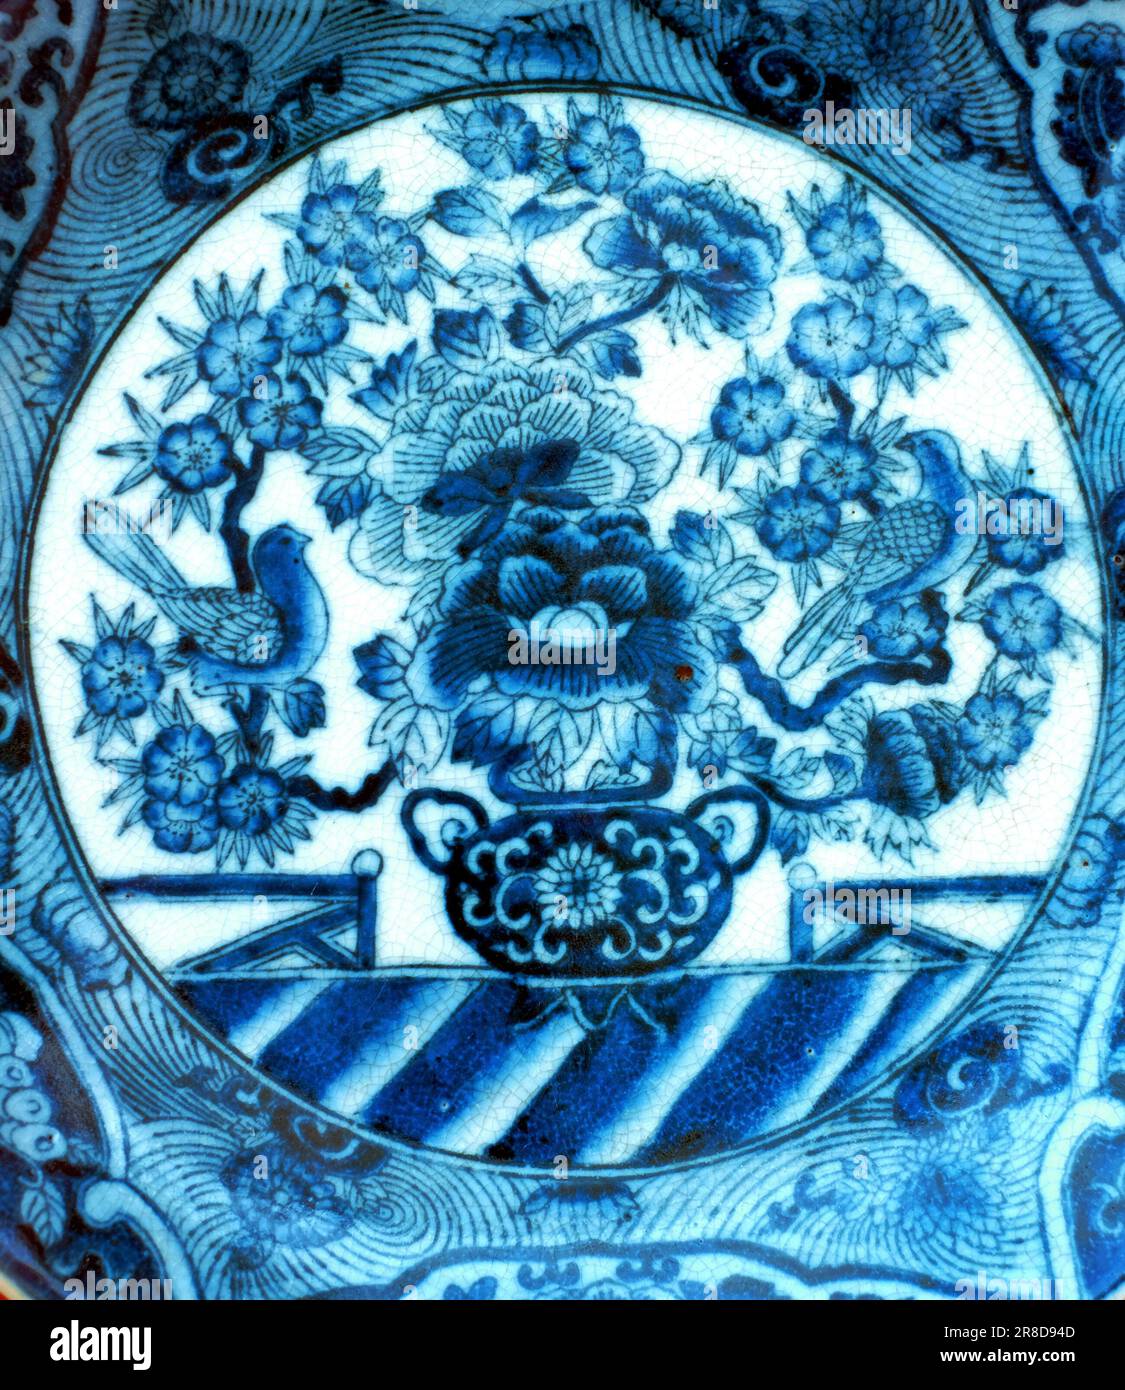 Typique tuile céramique style azulejo au Portugal et en Espagne Banque D'Images